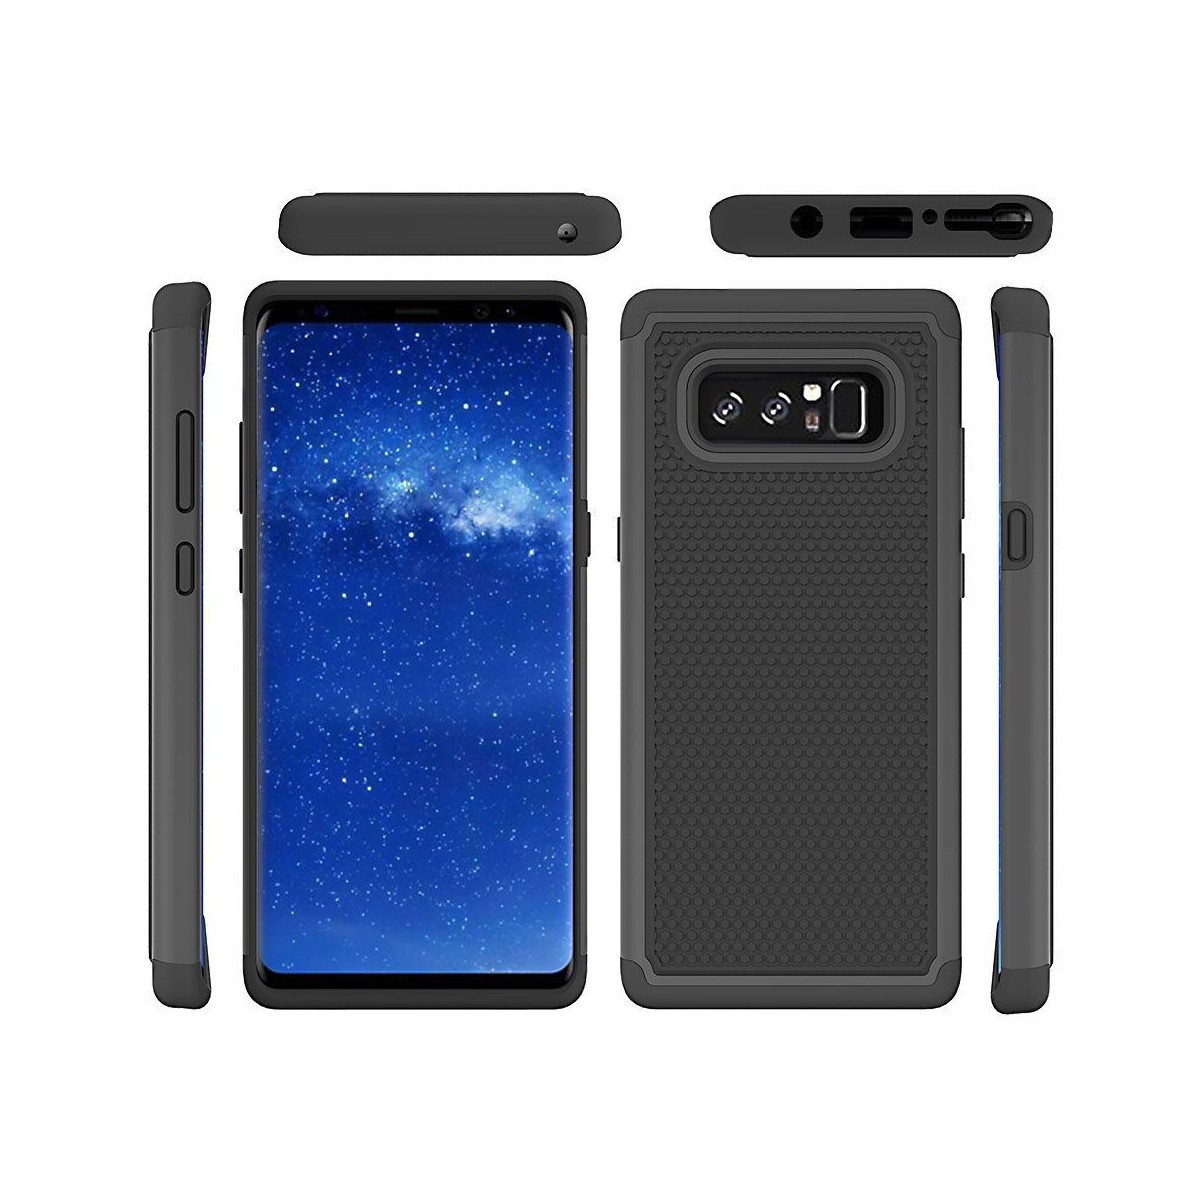 Coque Galaxy Note 8 Anti-choc et Bi-matière Noire - Crazy Kase